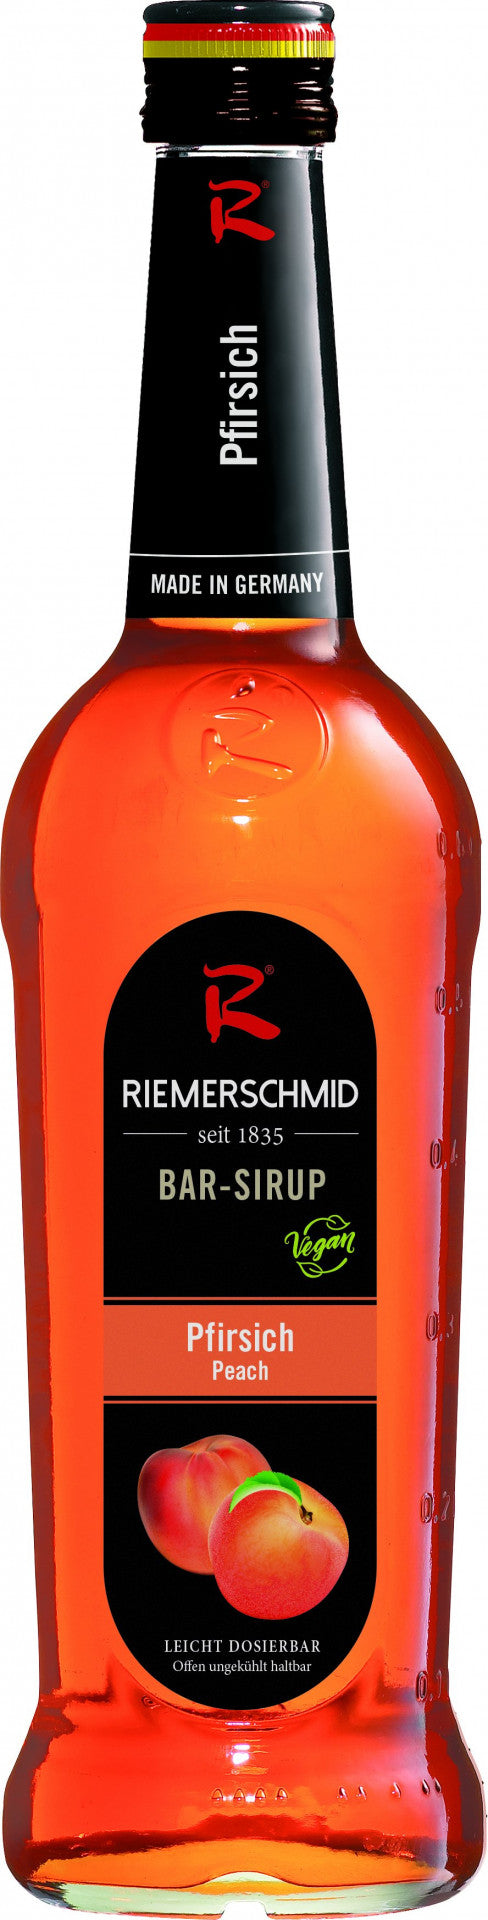 Riemerschmid Bar-Sirup Pfirsich Geschmack 0,7L